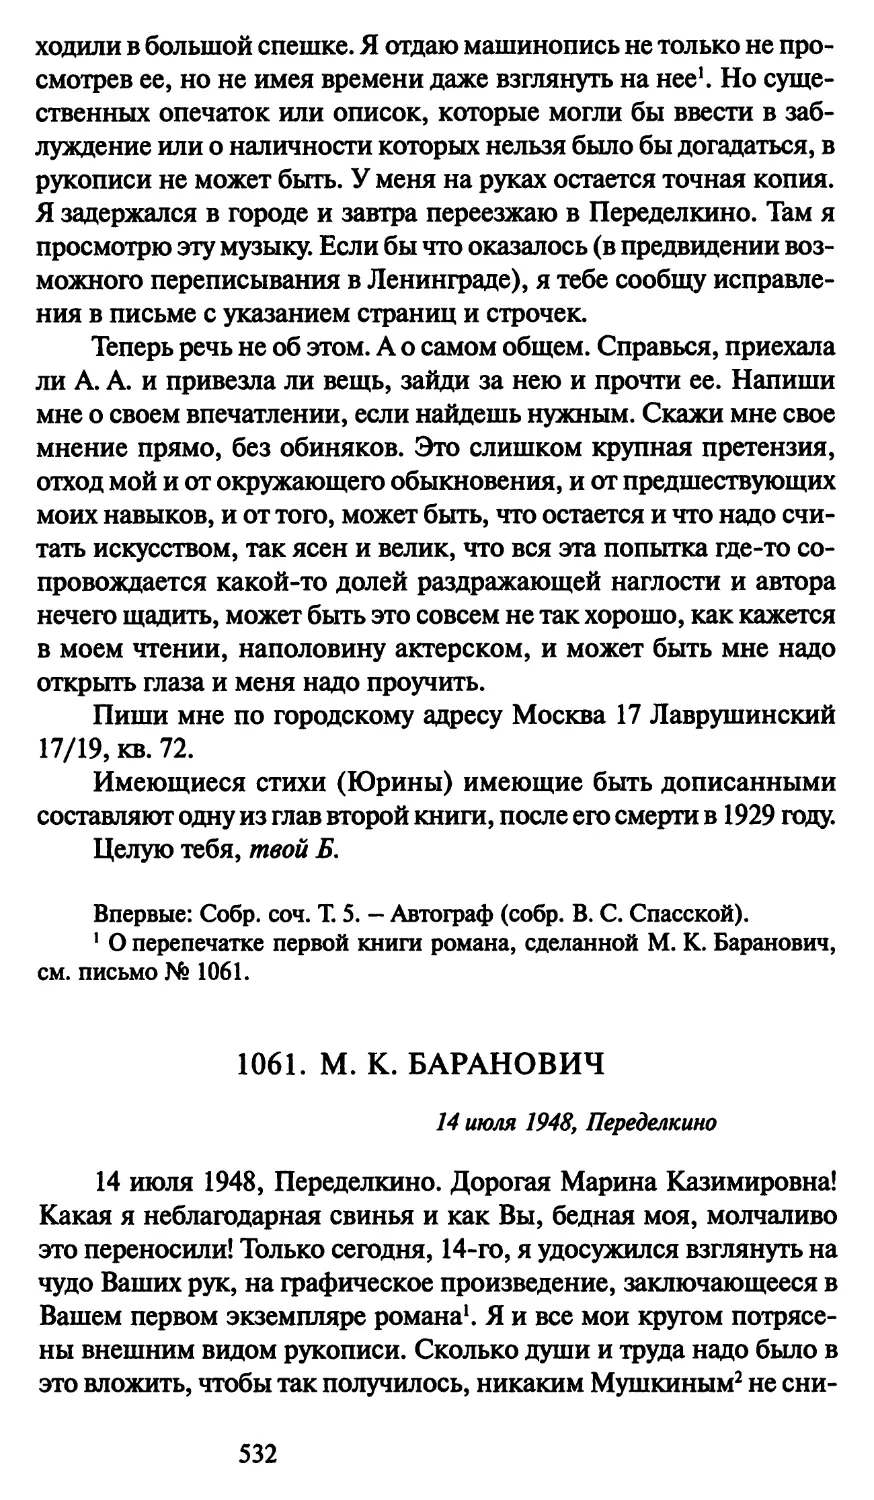 1061. М. К. Баранович 14 июля 1948